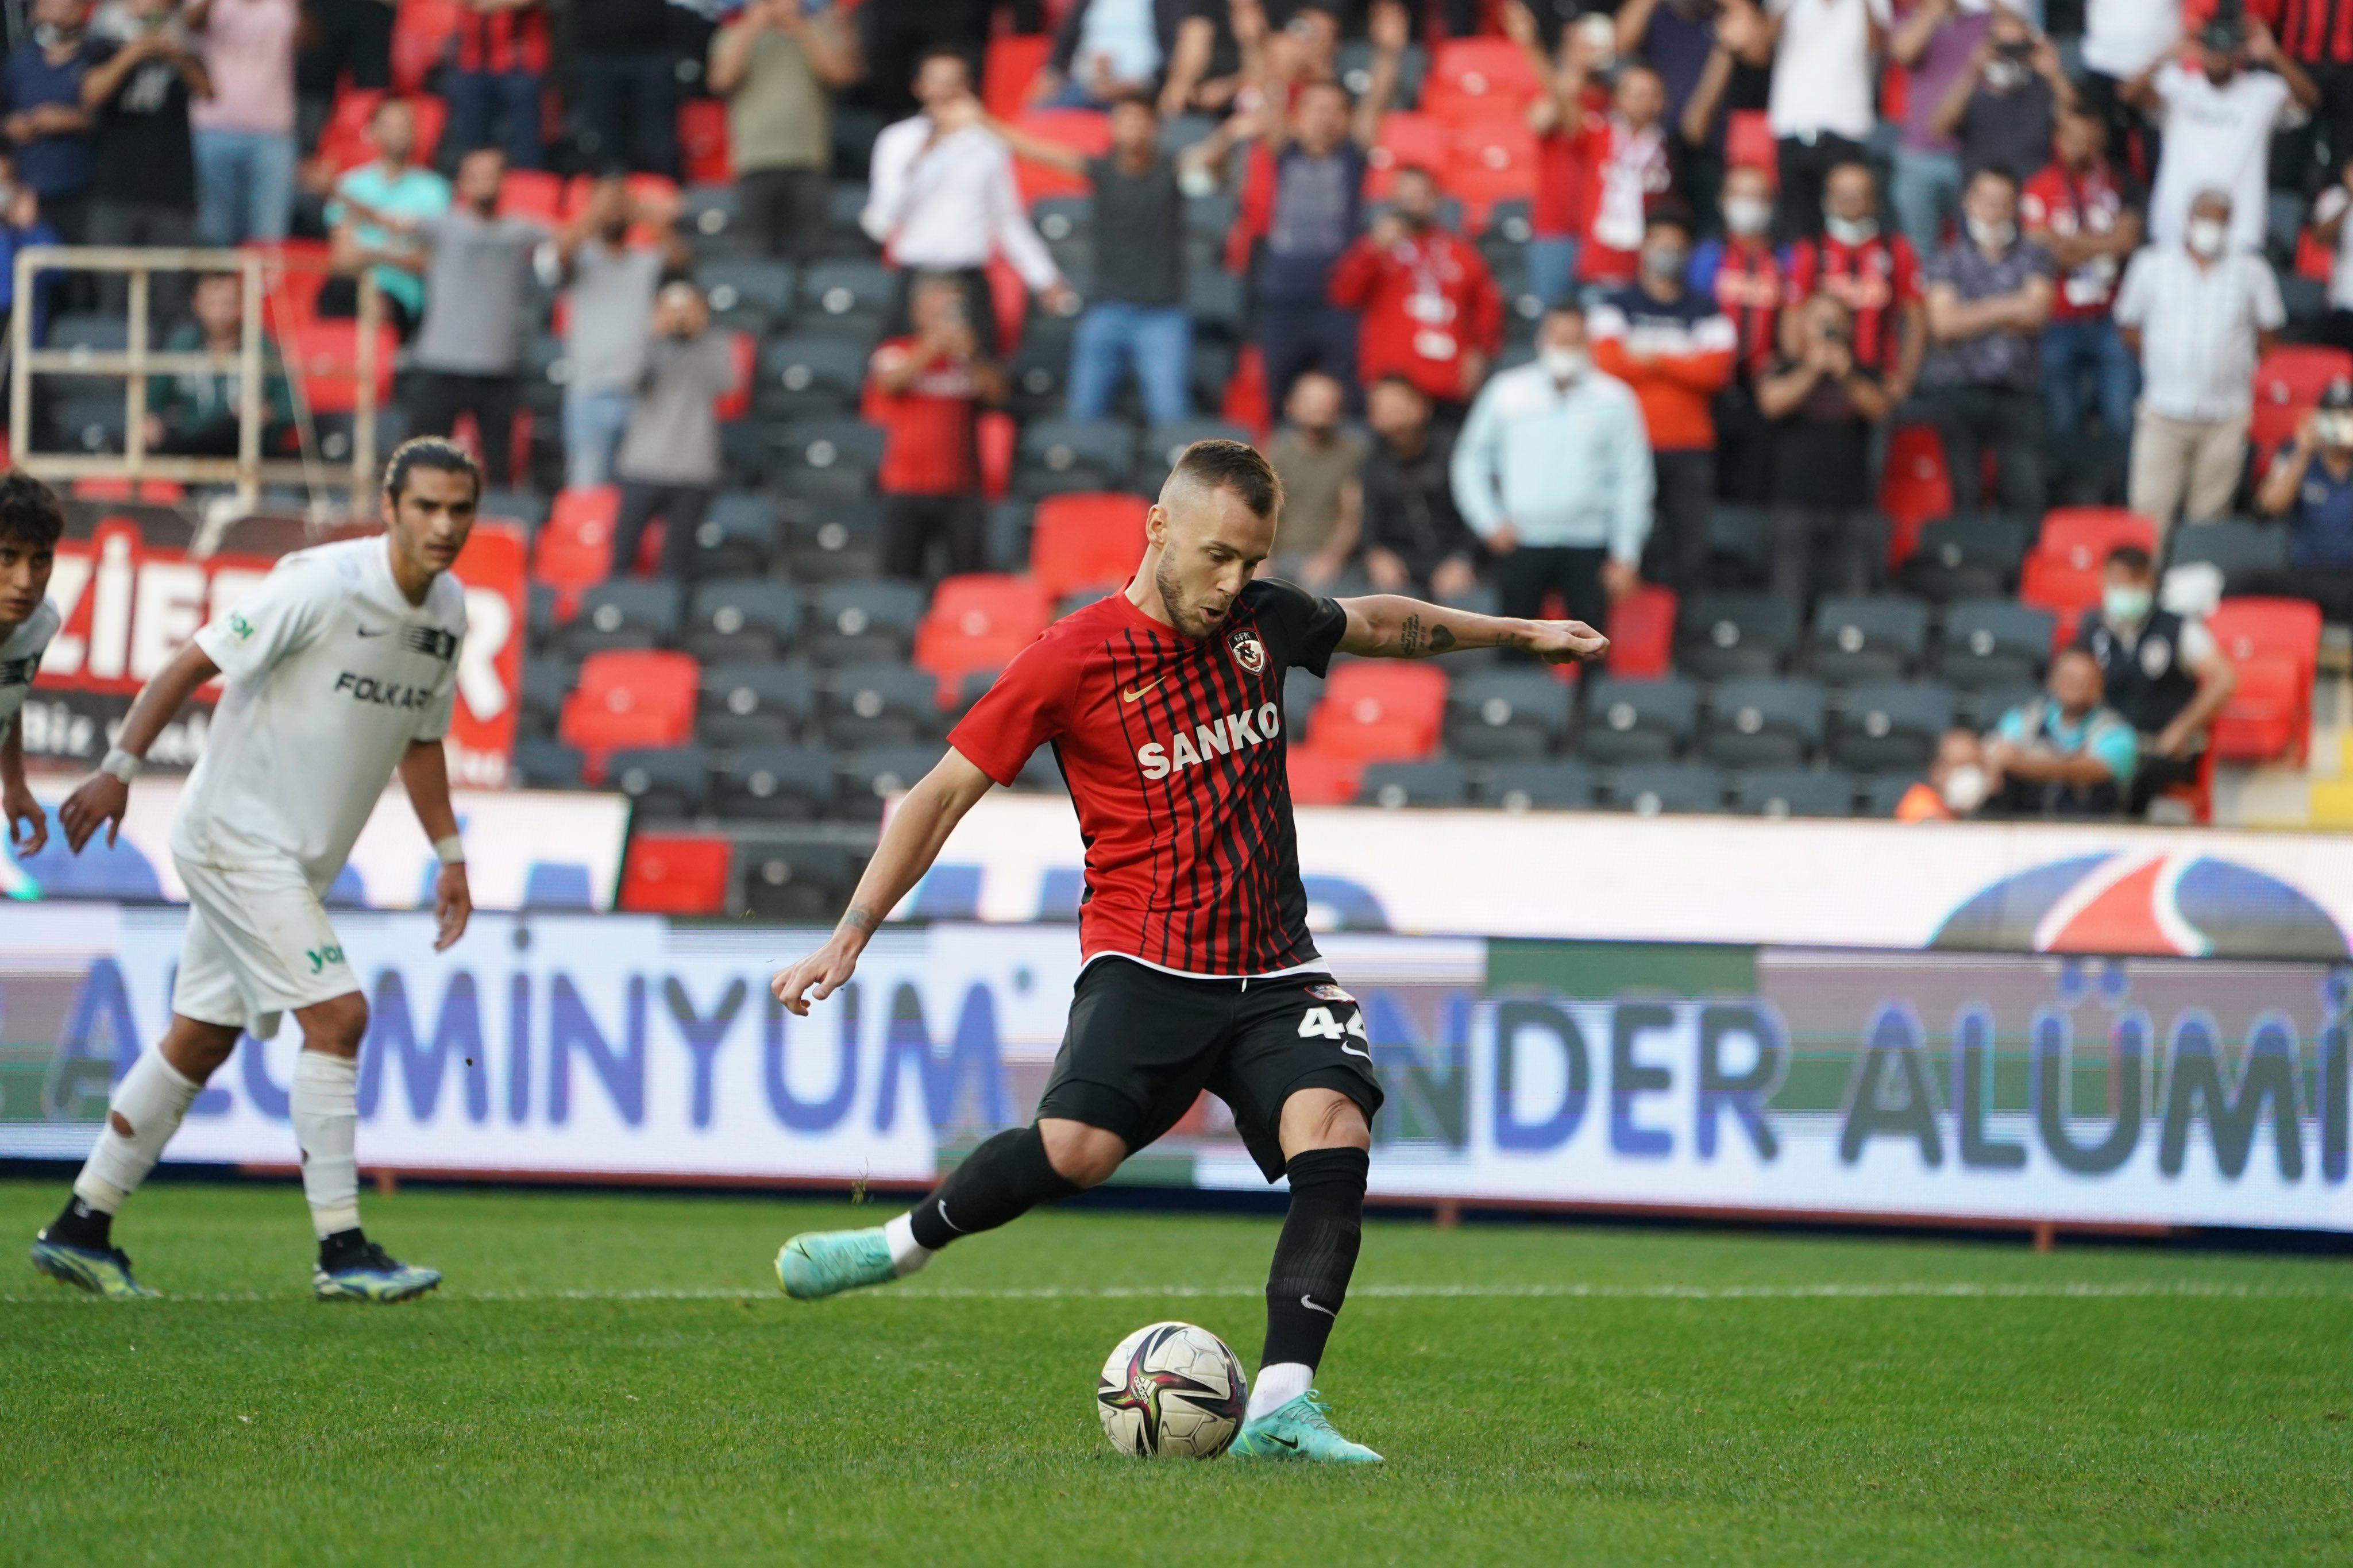 ÖZET | Gaziantep FK - Altay maç sonucu: 4-1